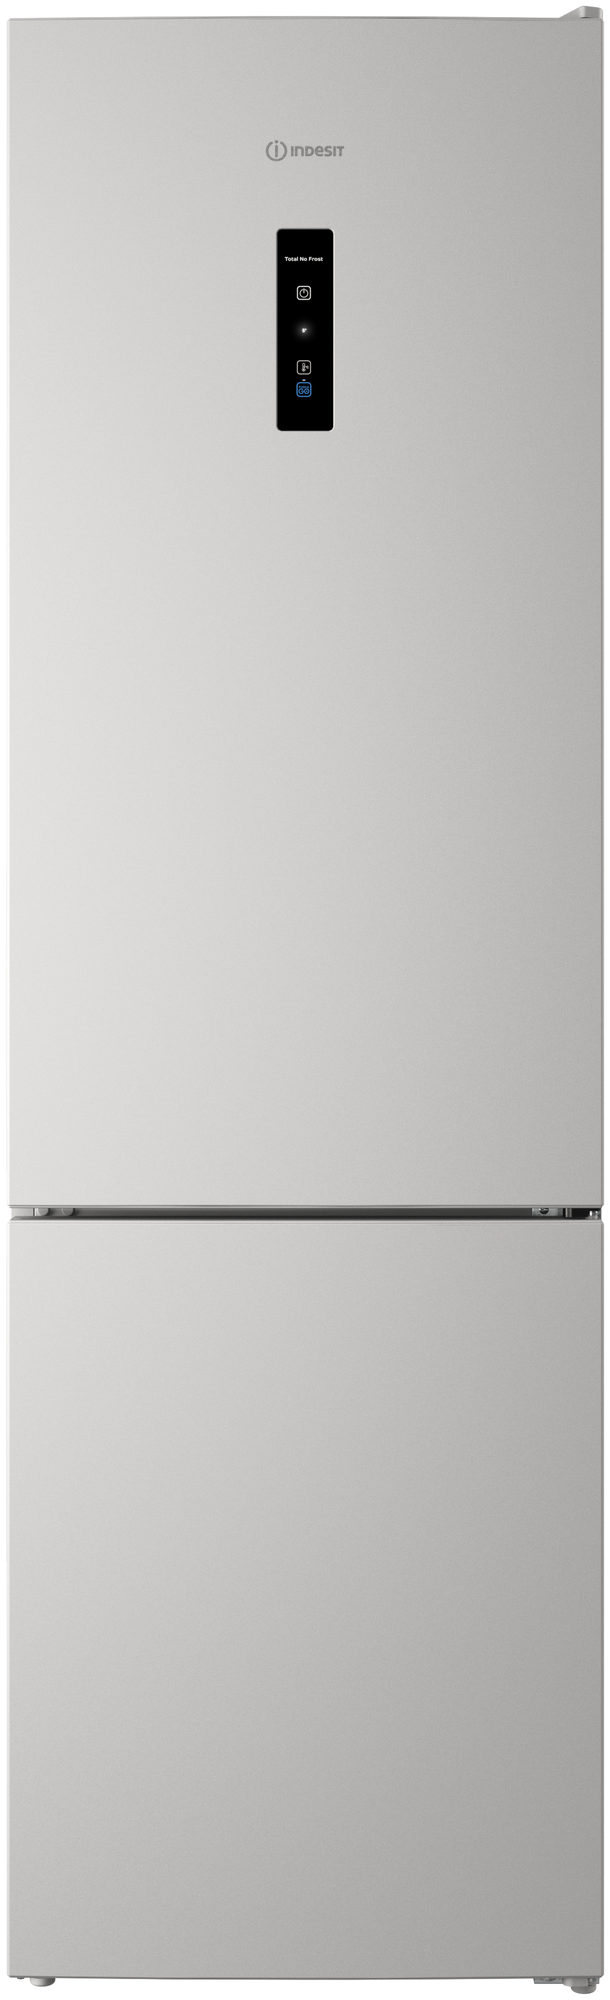 Холодильник Indesit ITR 5200 W с Easy Fit